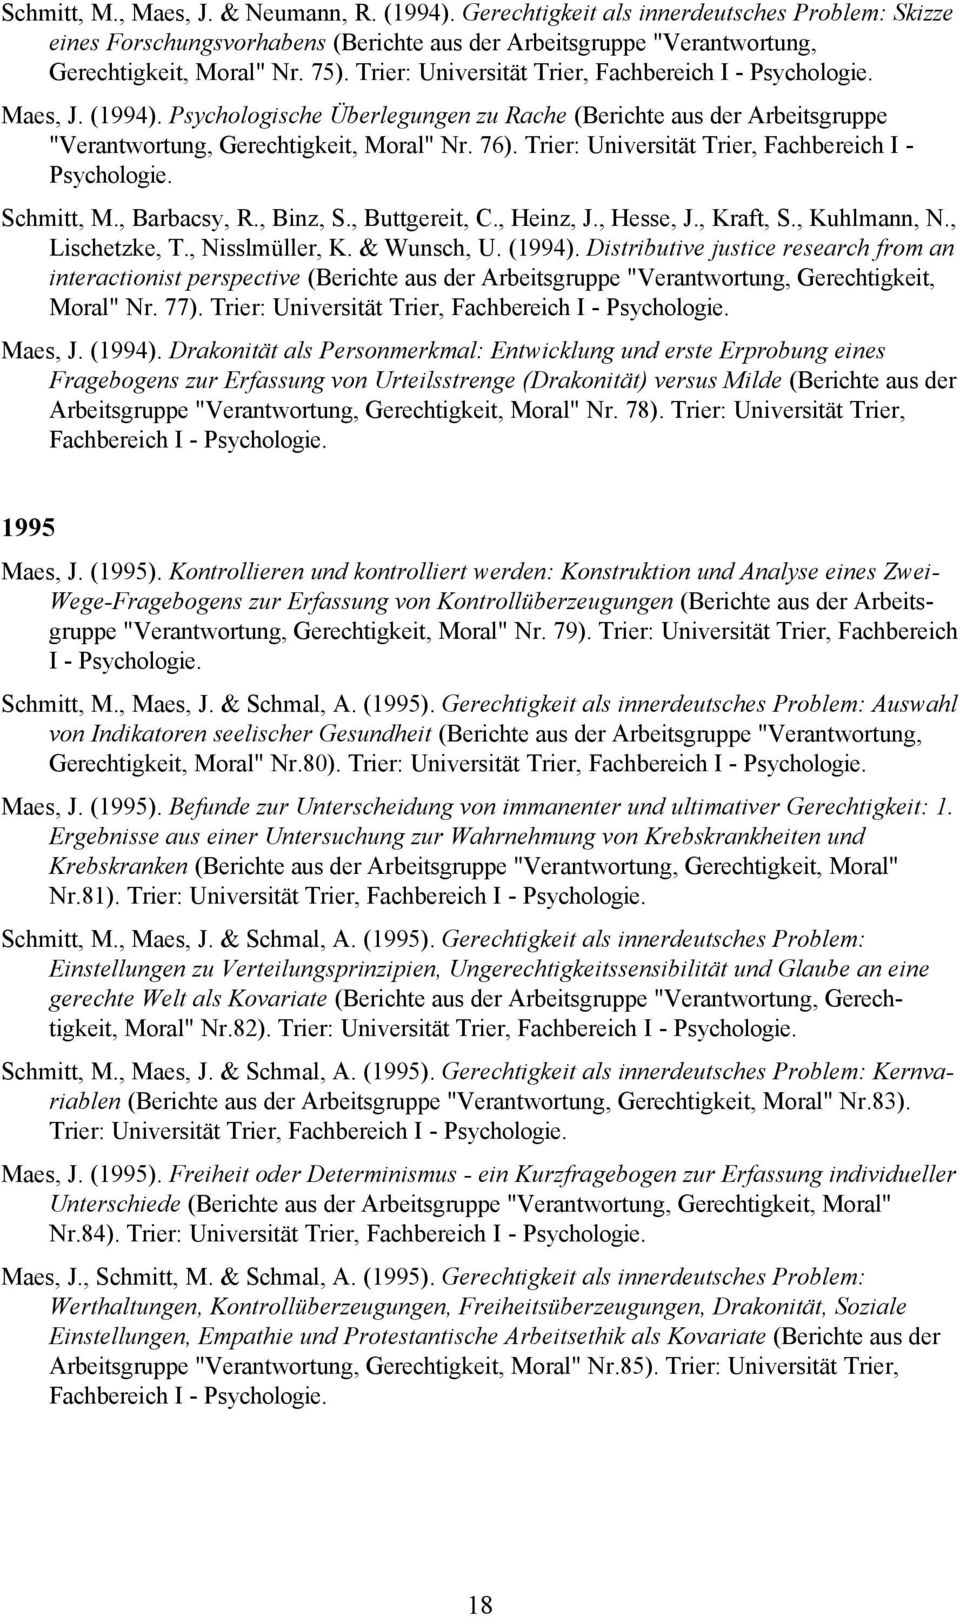 Trier: Universität Trier, Fachbereich I - Schmitt, M., Barbacsy, R., Binz, S., Buttgereit, C., Heinz, J., Hesse, J., Kraft, S., Kuhlmann, N., Lischetzke, T., Nisslmüller, K. & Wunsch, U. (1994).